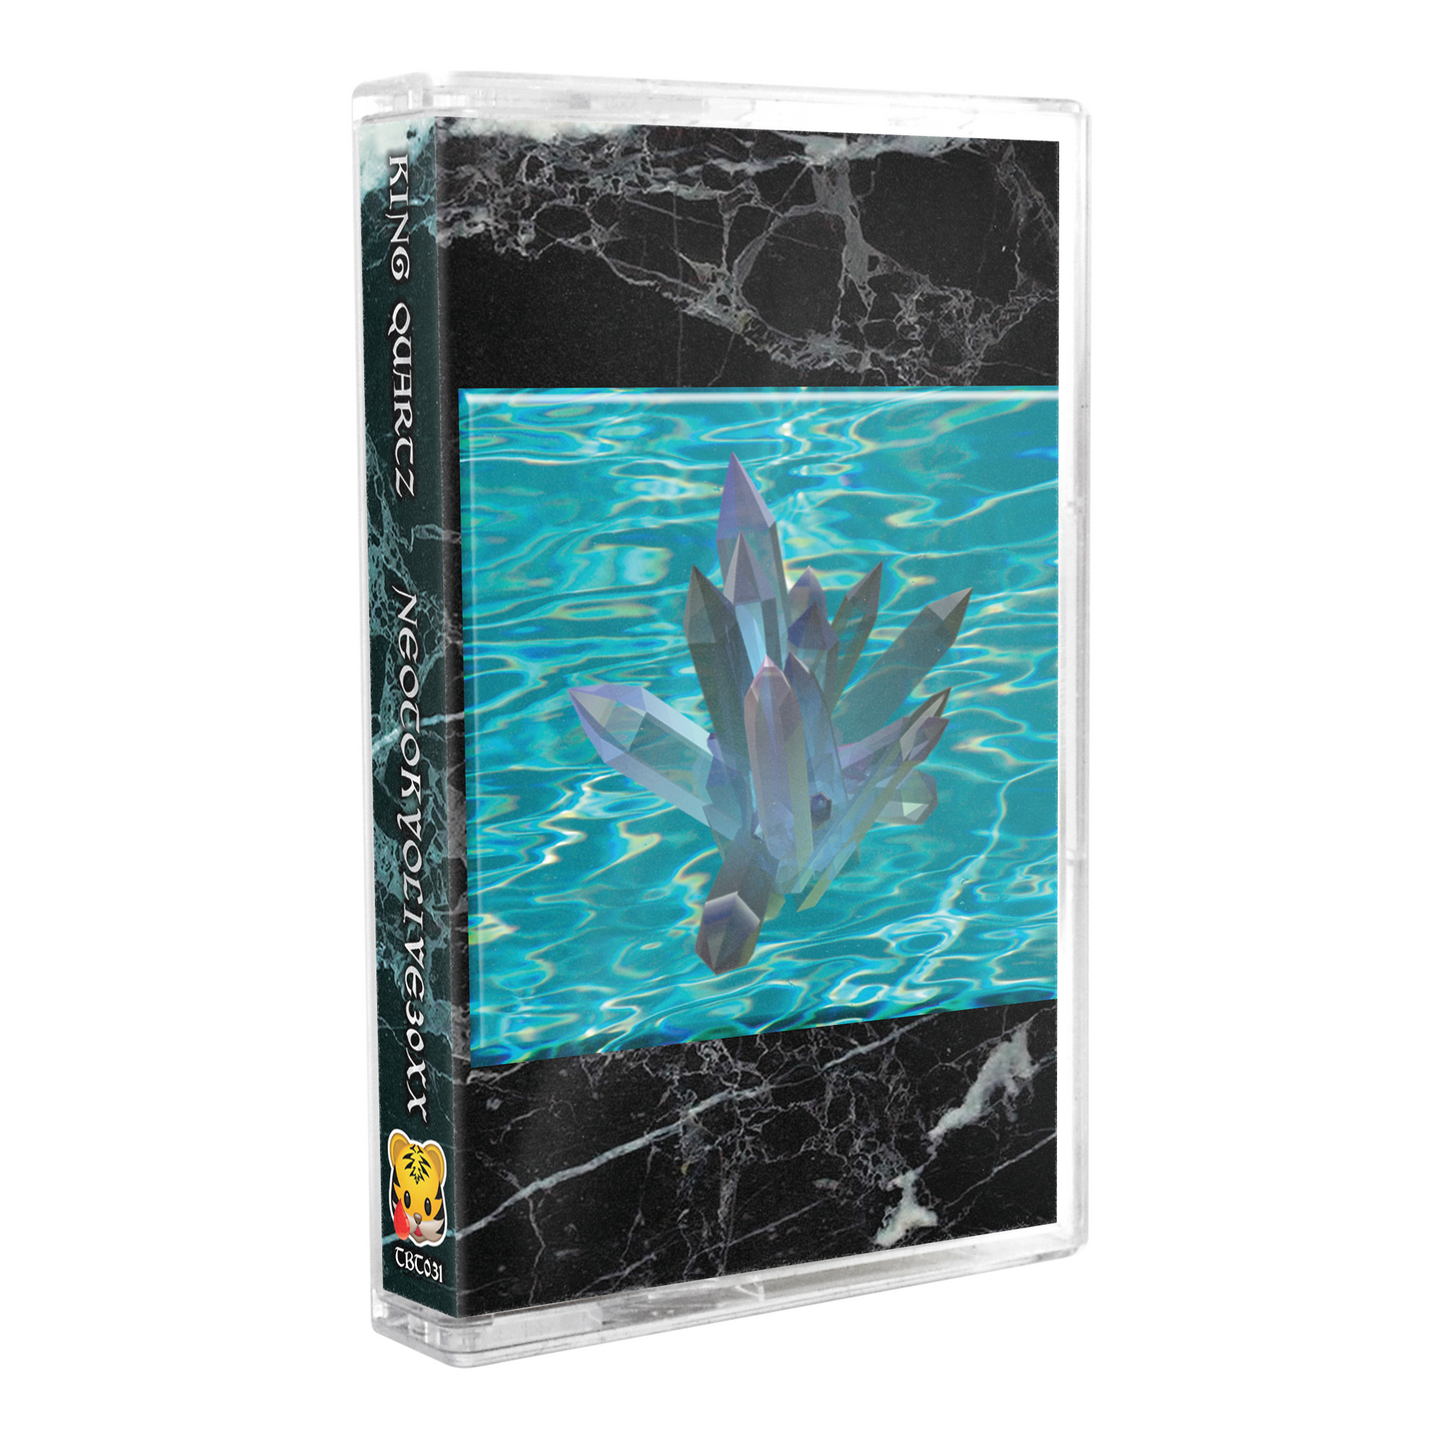 KING QUARTZ - "NEOTOKYOLIVE30XX" Limited Edition Cassette Tape